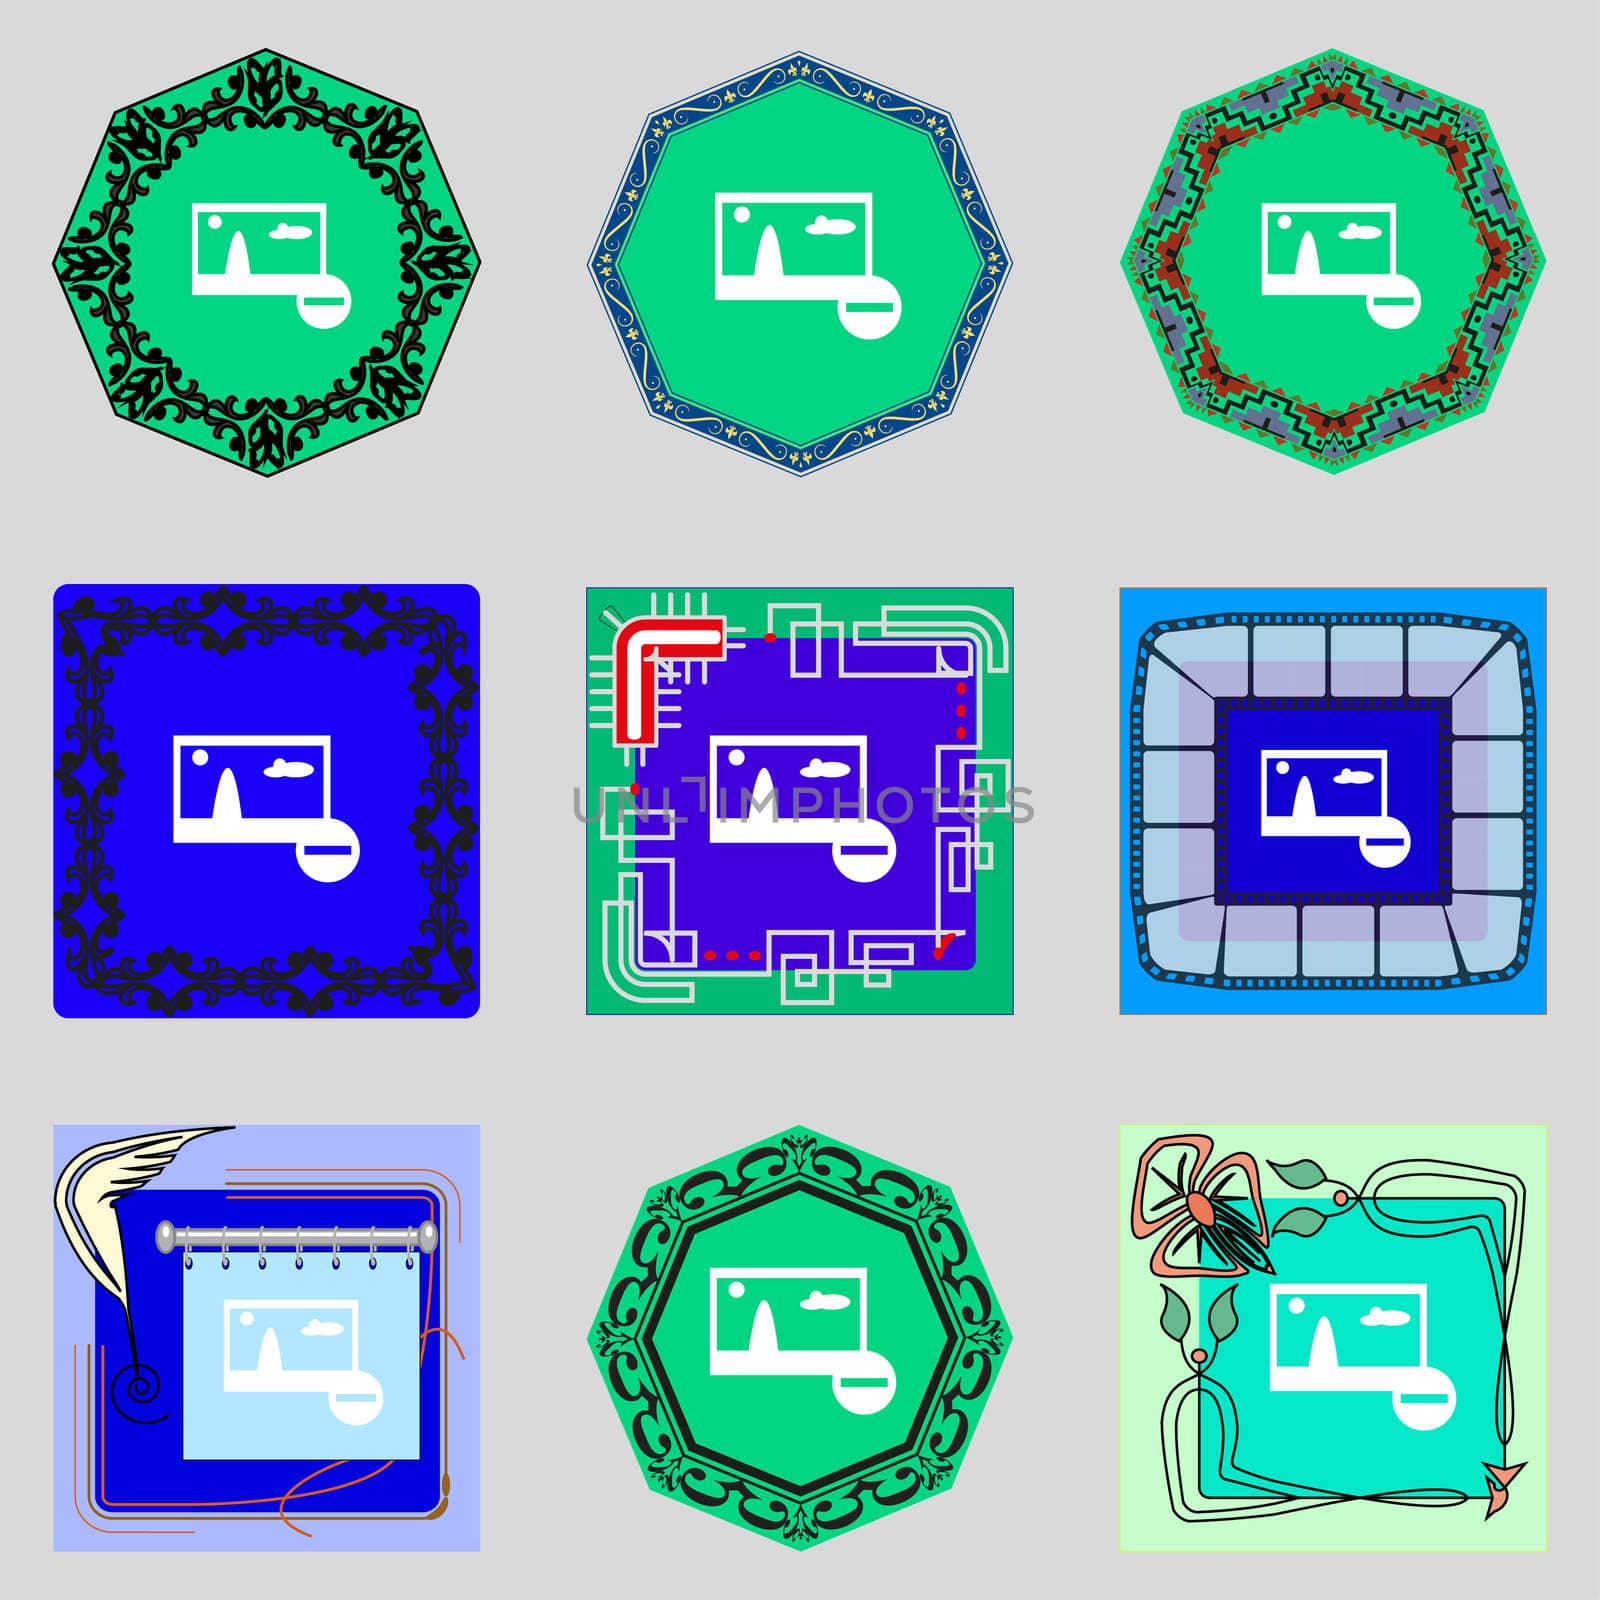 Minus File JPG sign icon. Download image file symbol. Set colourful buttons. Modern UI website navigation illustration